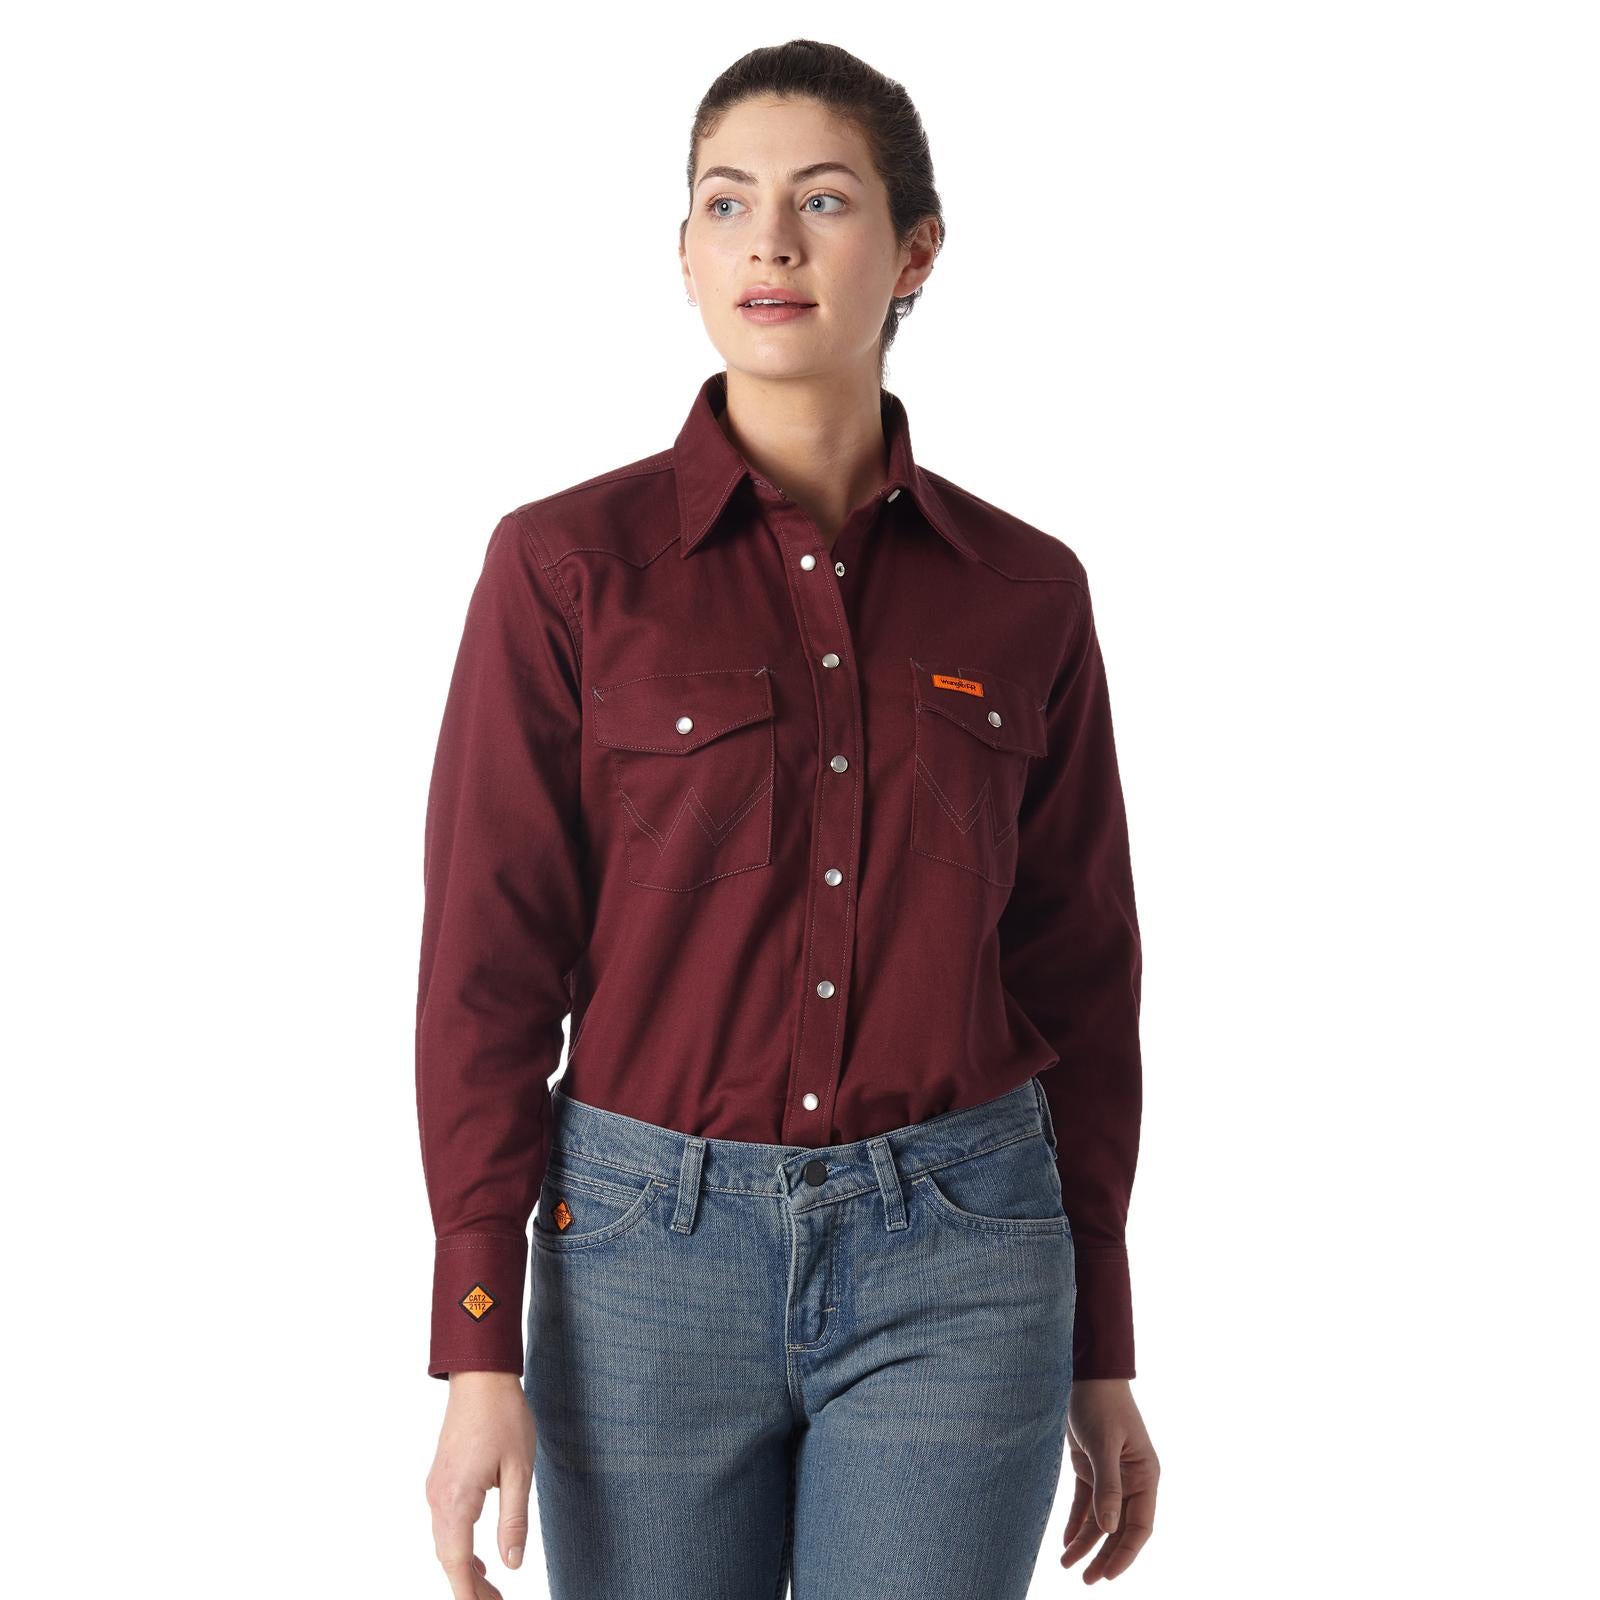 Wrangler FR Flame Resistant Women's Long Sleeve Shirt STYLE FRLW04R